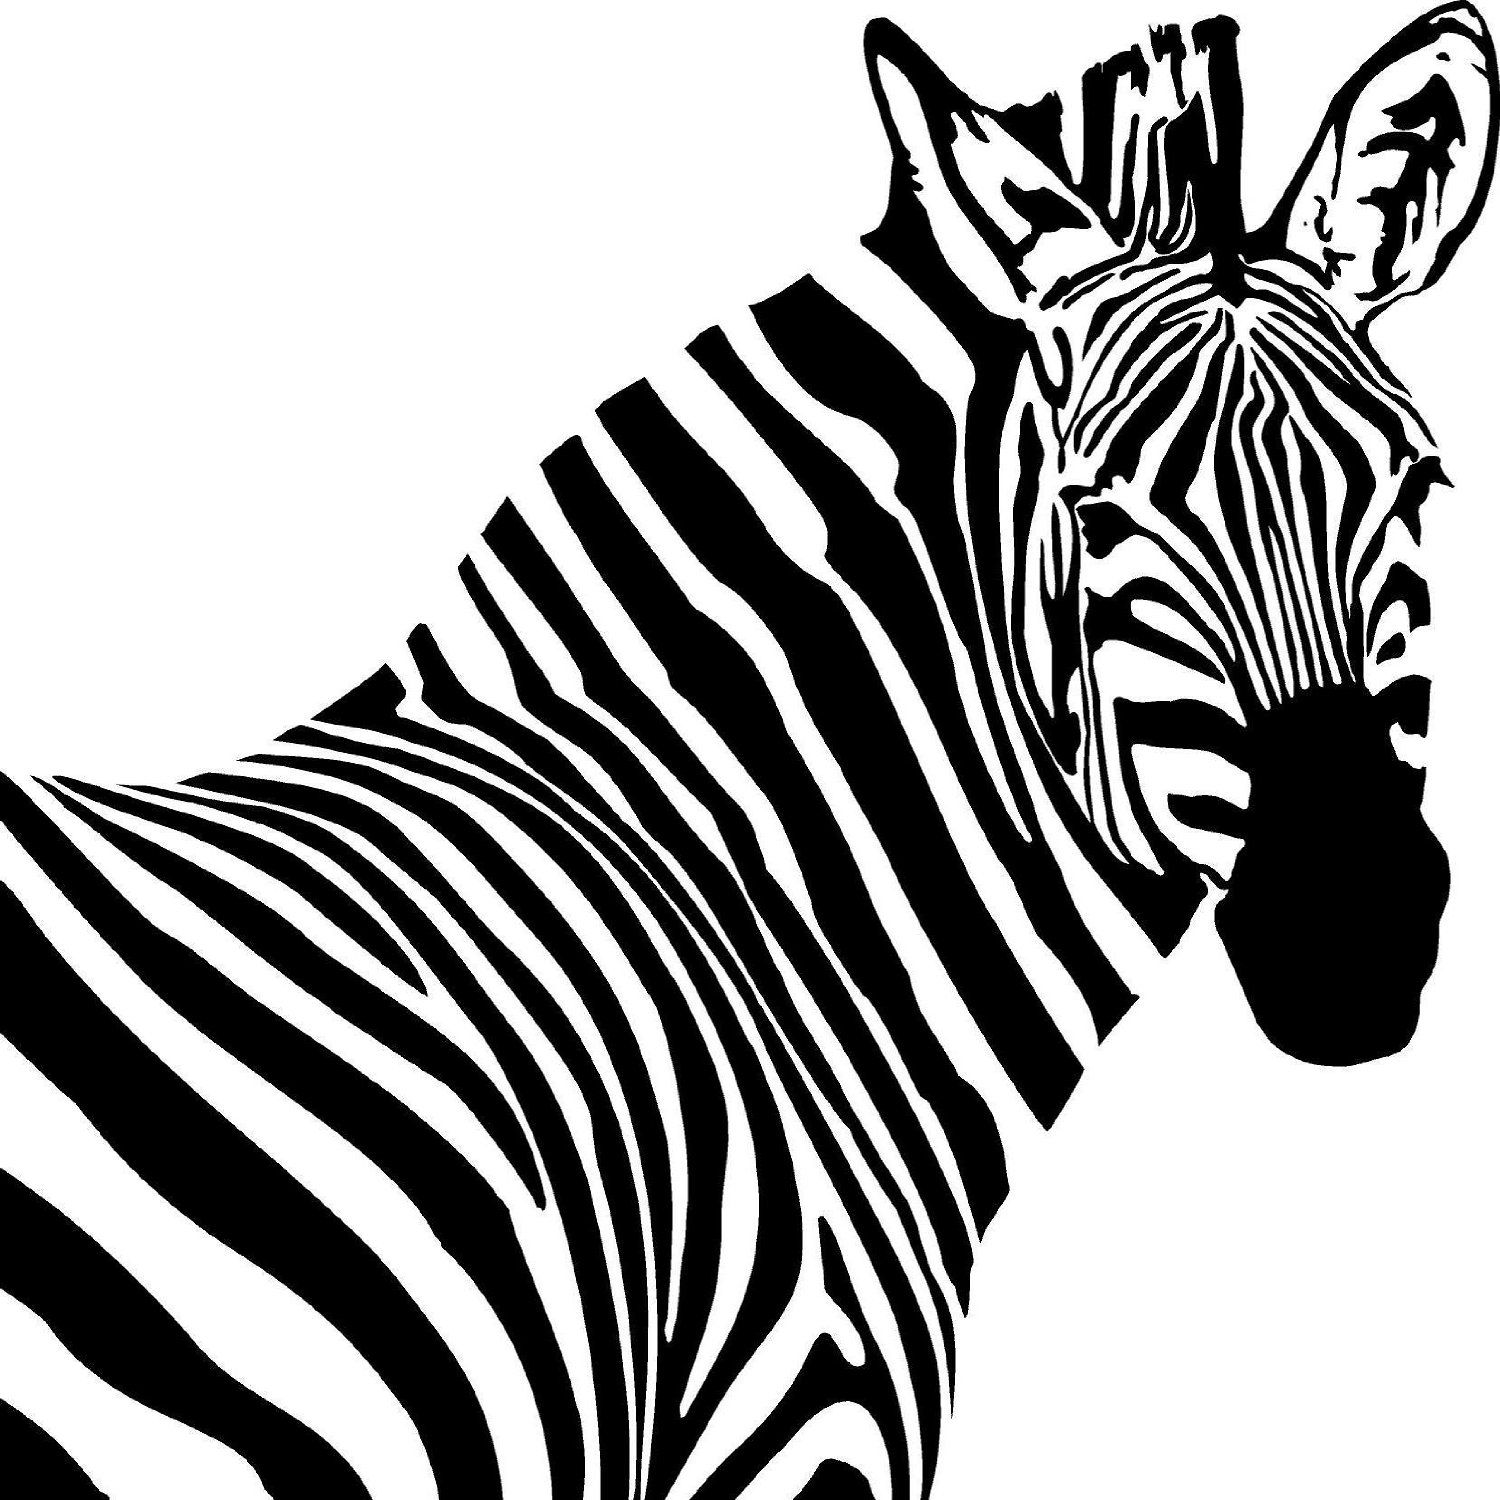 Zebra silhouette